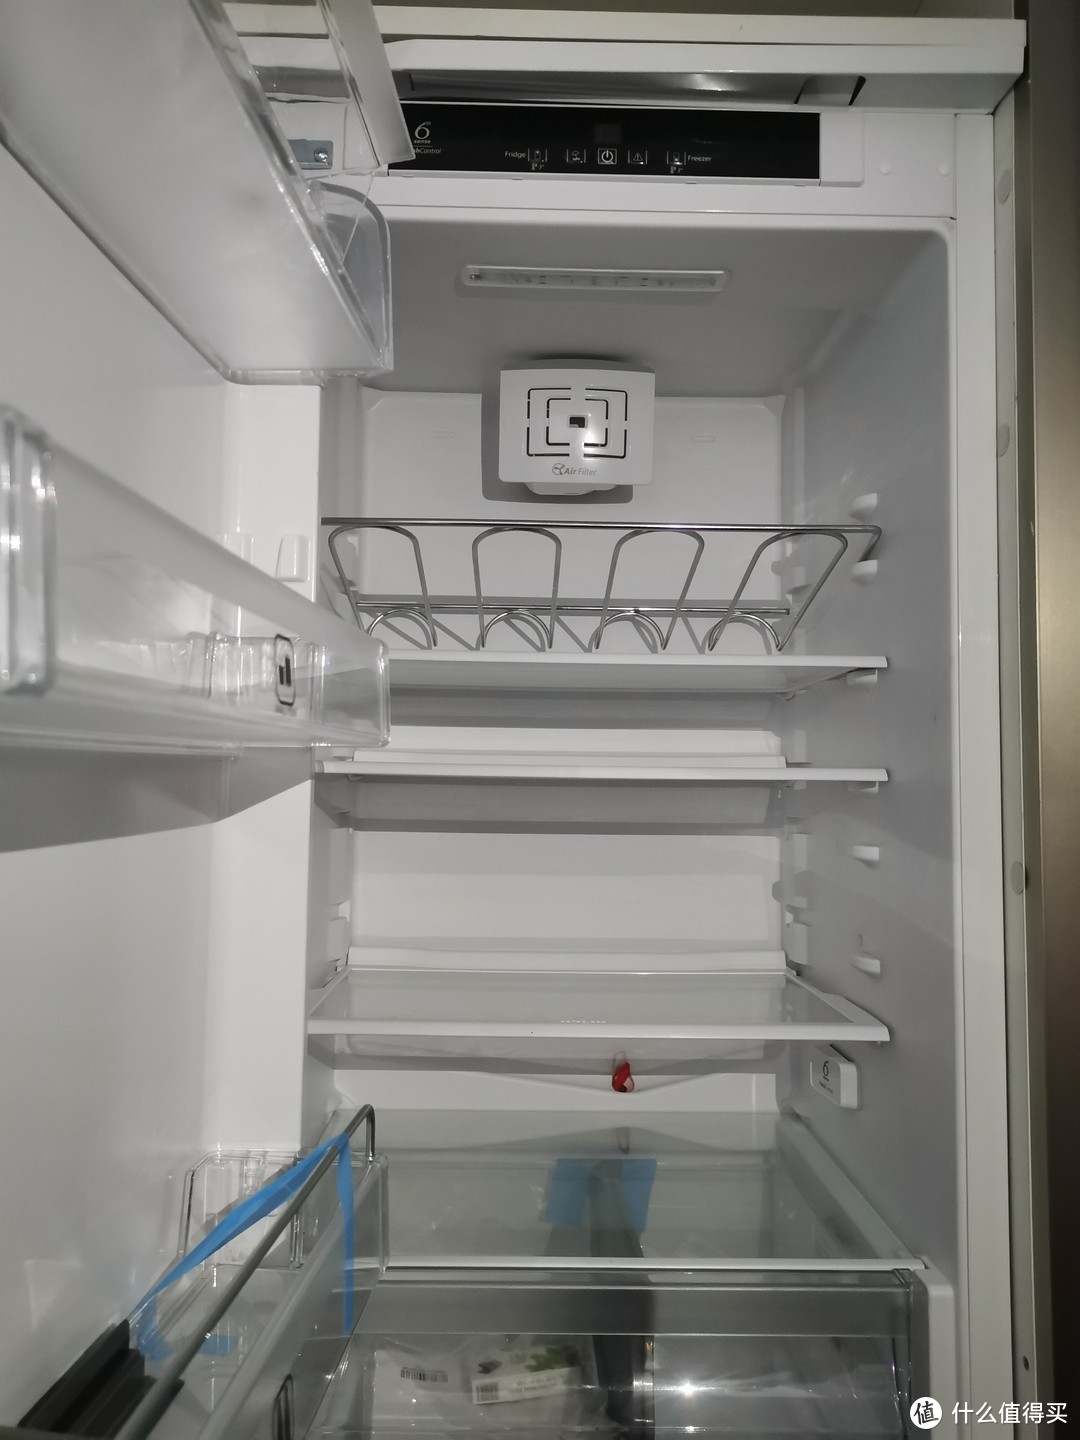 嵌入式冰箱值不值得买？嵌入式冰箱买进口好还是买国产好？